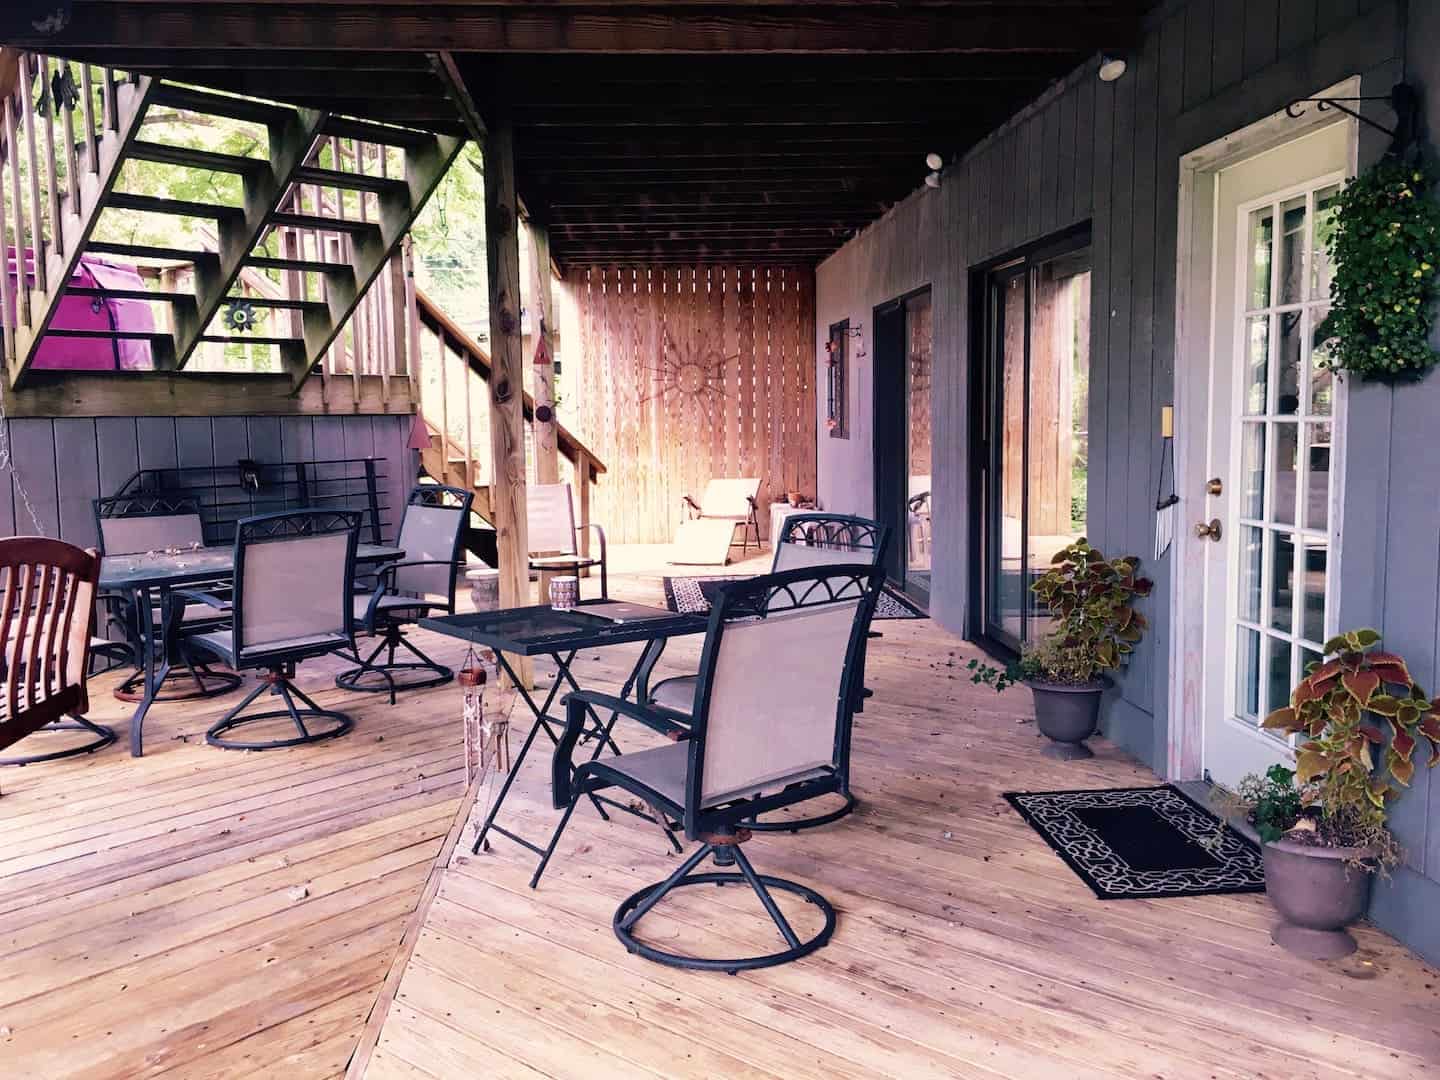 Image of Airbnb rental in Columbus, Ohio